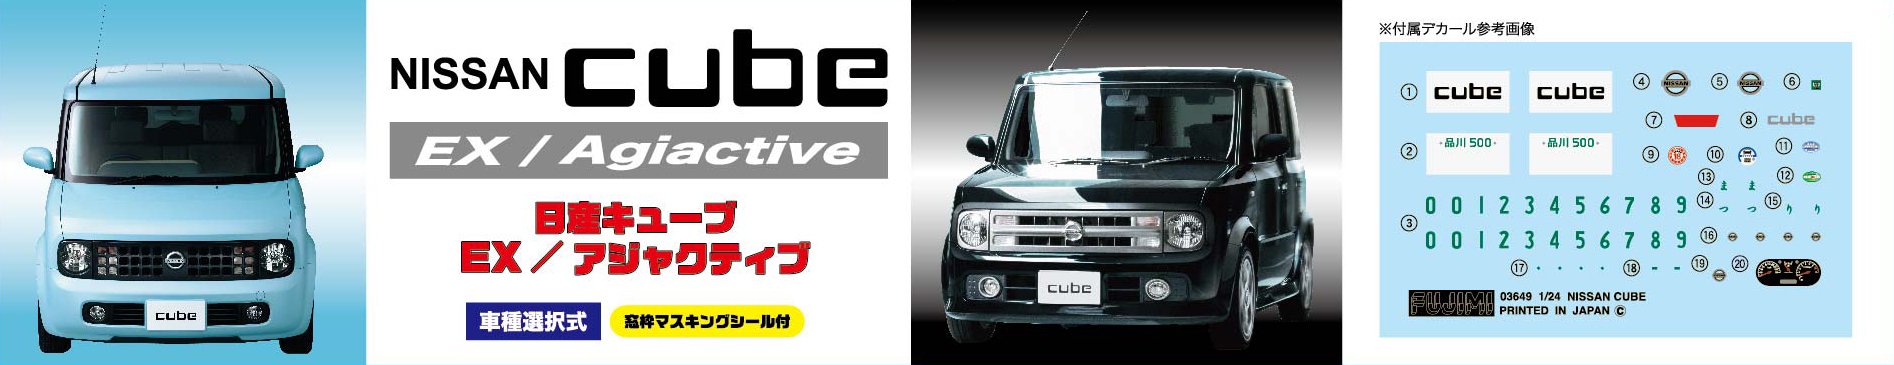 FUJIMI Id-66 Nissan Cube Ex / Agiactive Kit convertible à l'échelle 1/24